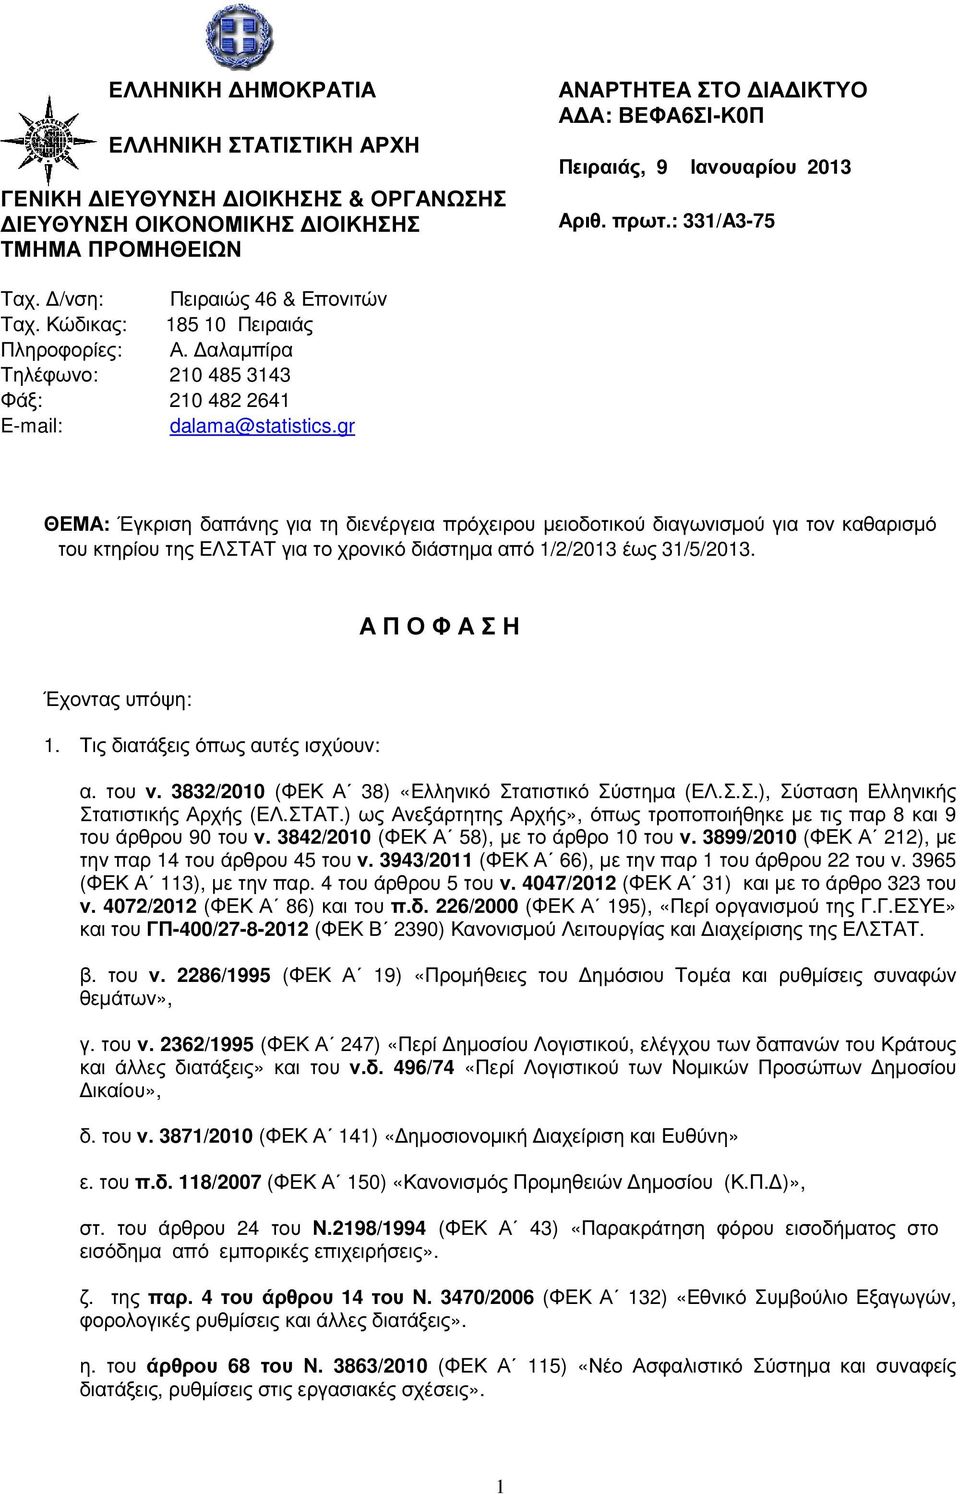 gr ΘΕΜΑ: Έγκριση δαπάνης για τη διενέργεια πρόχειρου µειοδοτικού διαγωνισµού για τον καθαρισµό του κτηρίου της ΕΛΣΤΑΤ για το χρονικό διάστηµα από 1/2/2013 έως 31/5/2013.